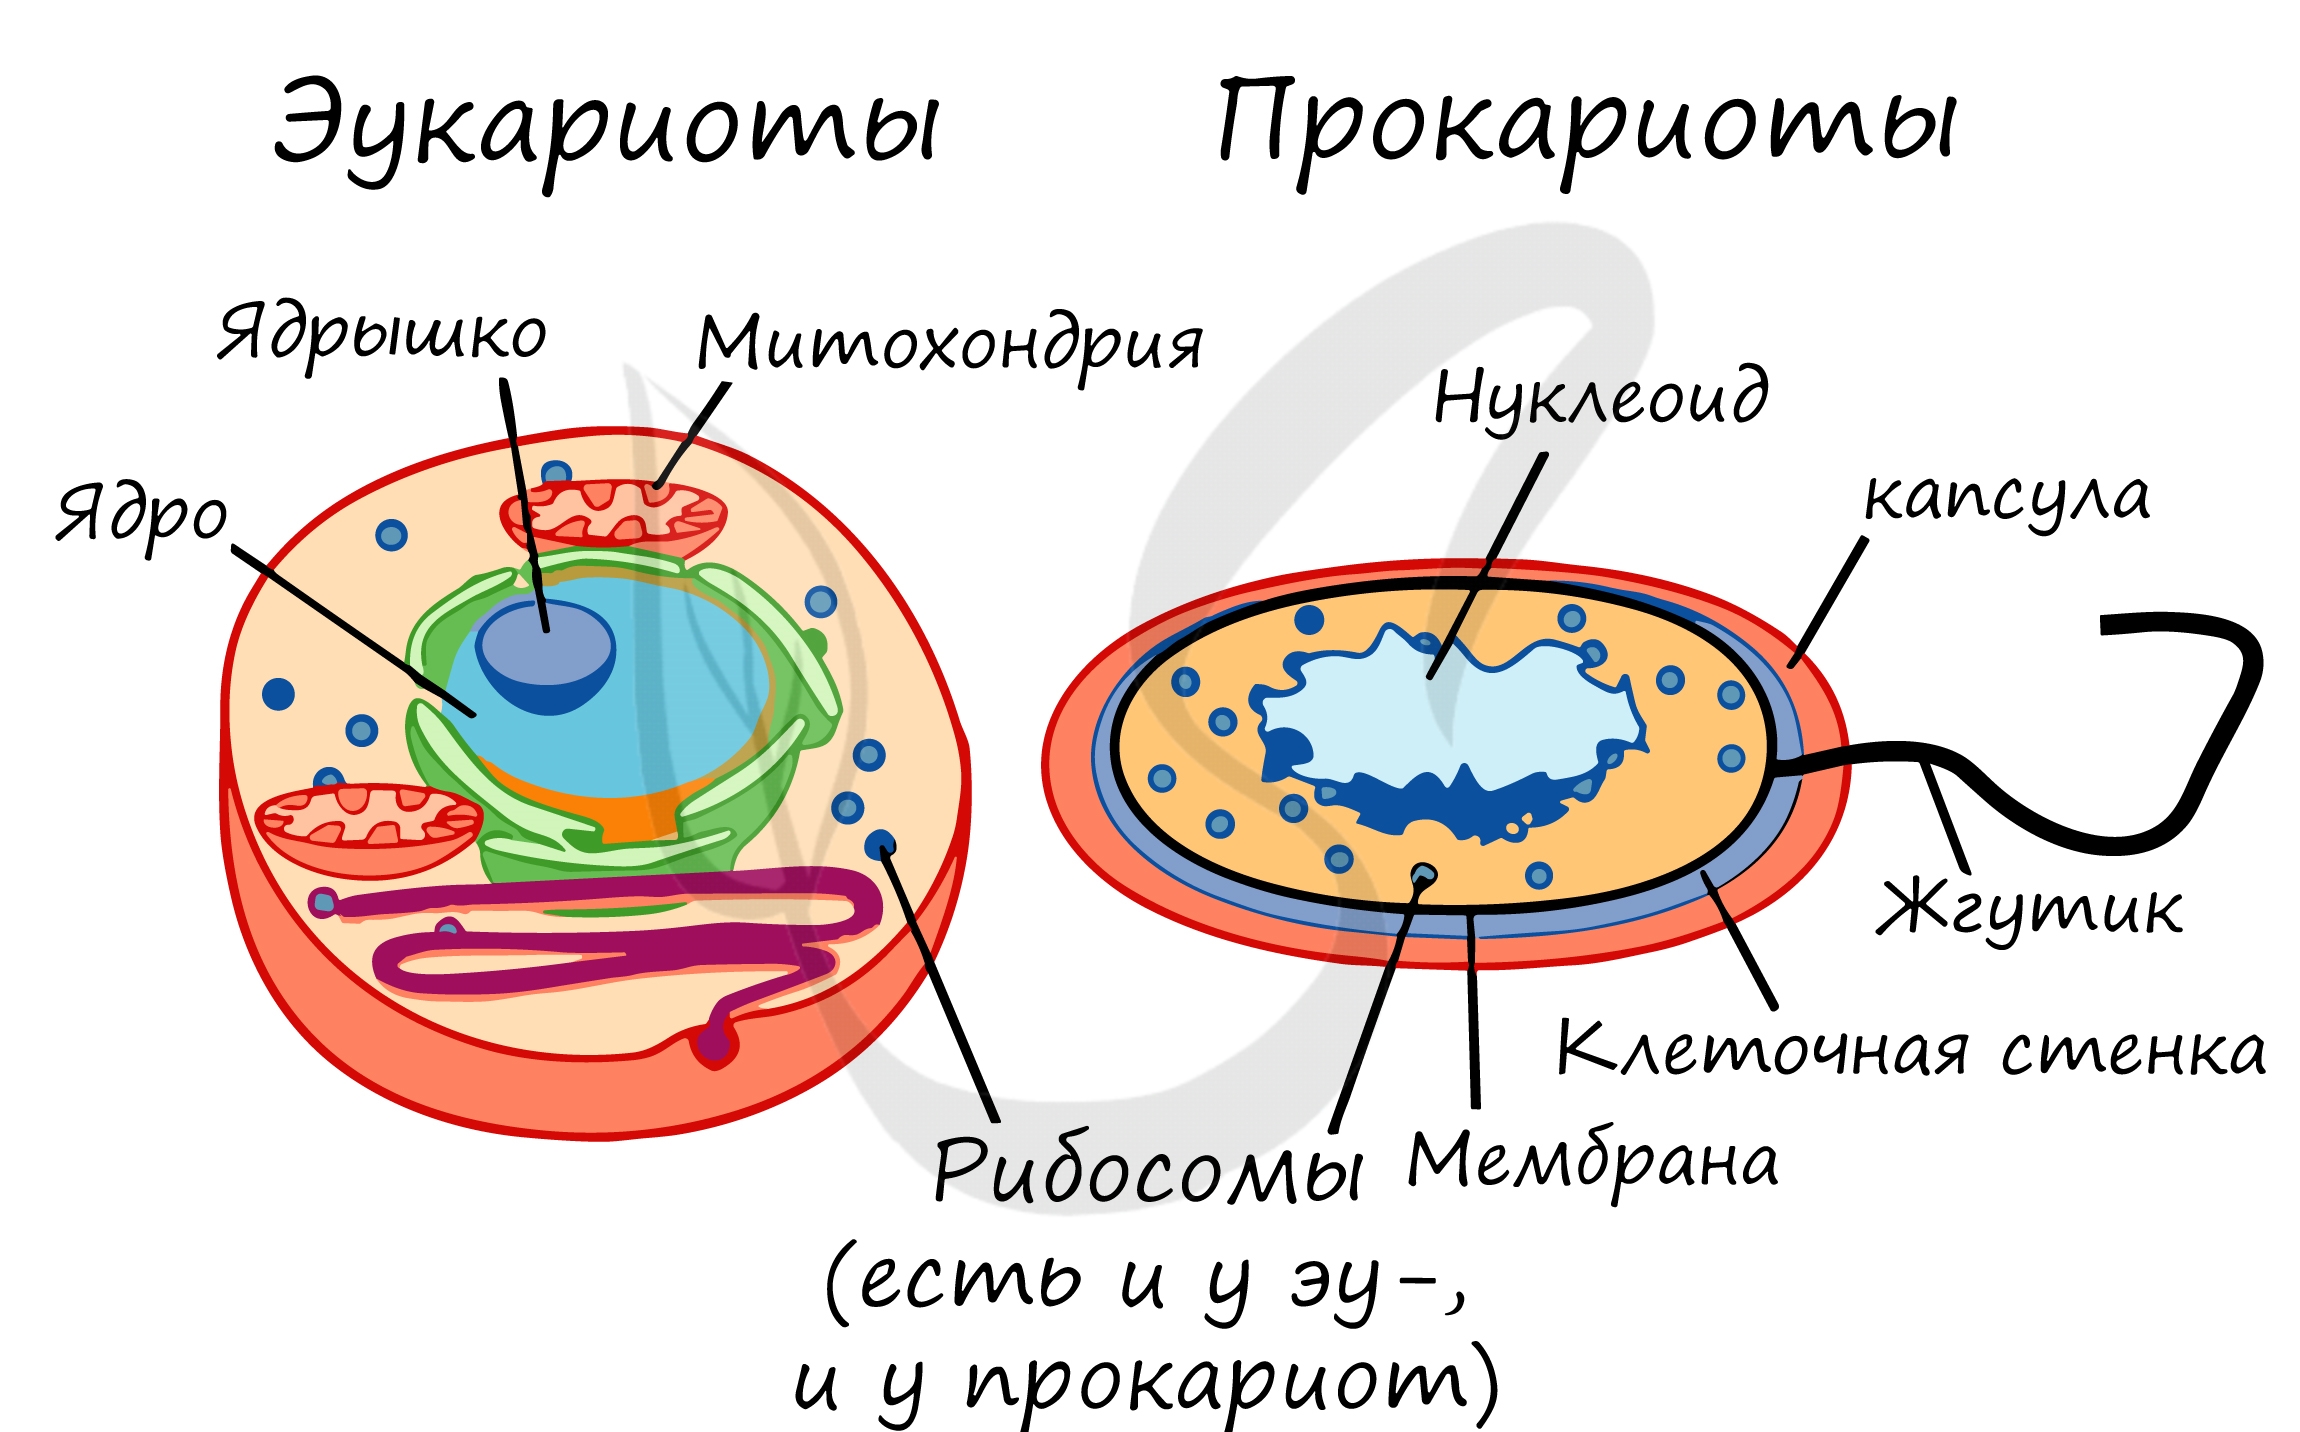 В клетках прокариот в отличие. Строение клетки прокариот и эукариот. Строение бактерий прокариоты и эукариоты. Отличие прокариот от эукариот рисунок. Прокариотическая клетка и эукариотическая клетка строение.